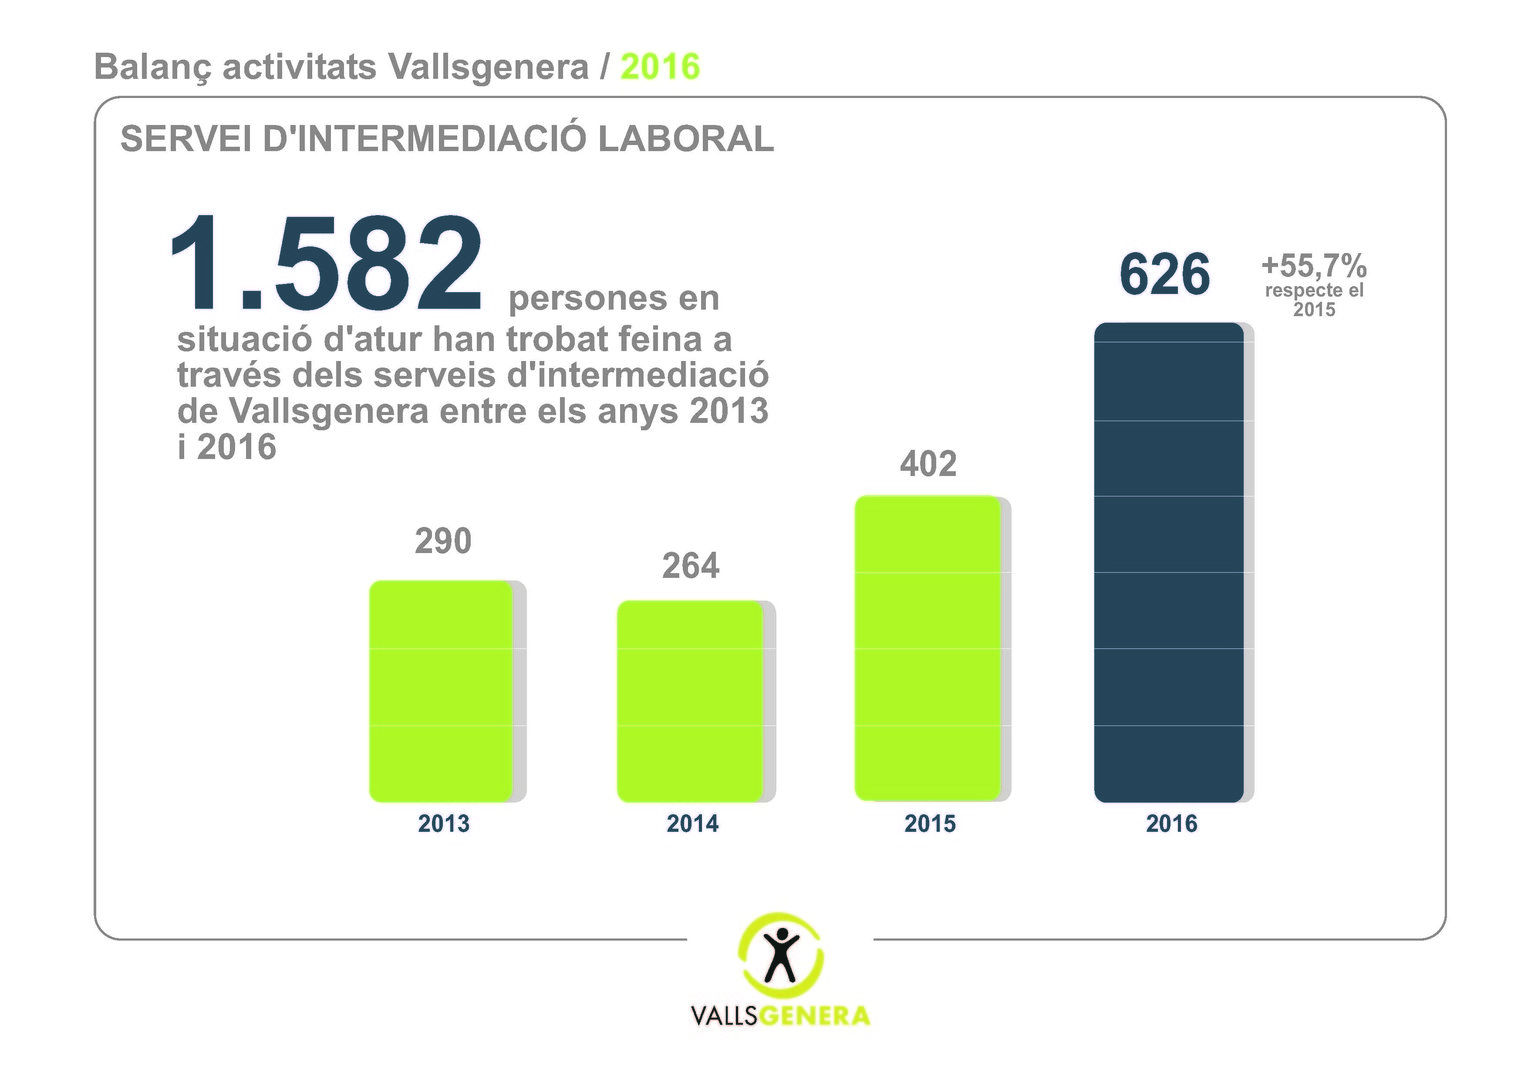 Vallsgenera va ajudar a més de 626 persones aturades a trobar feina el 2016